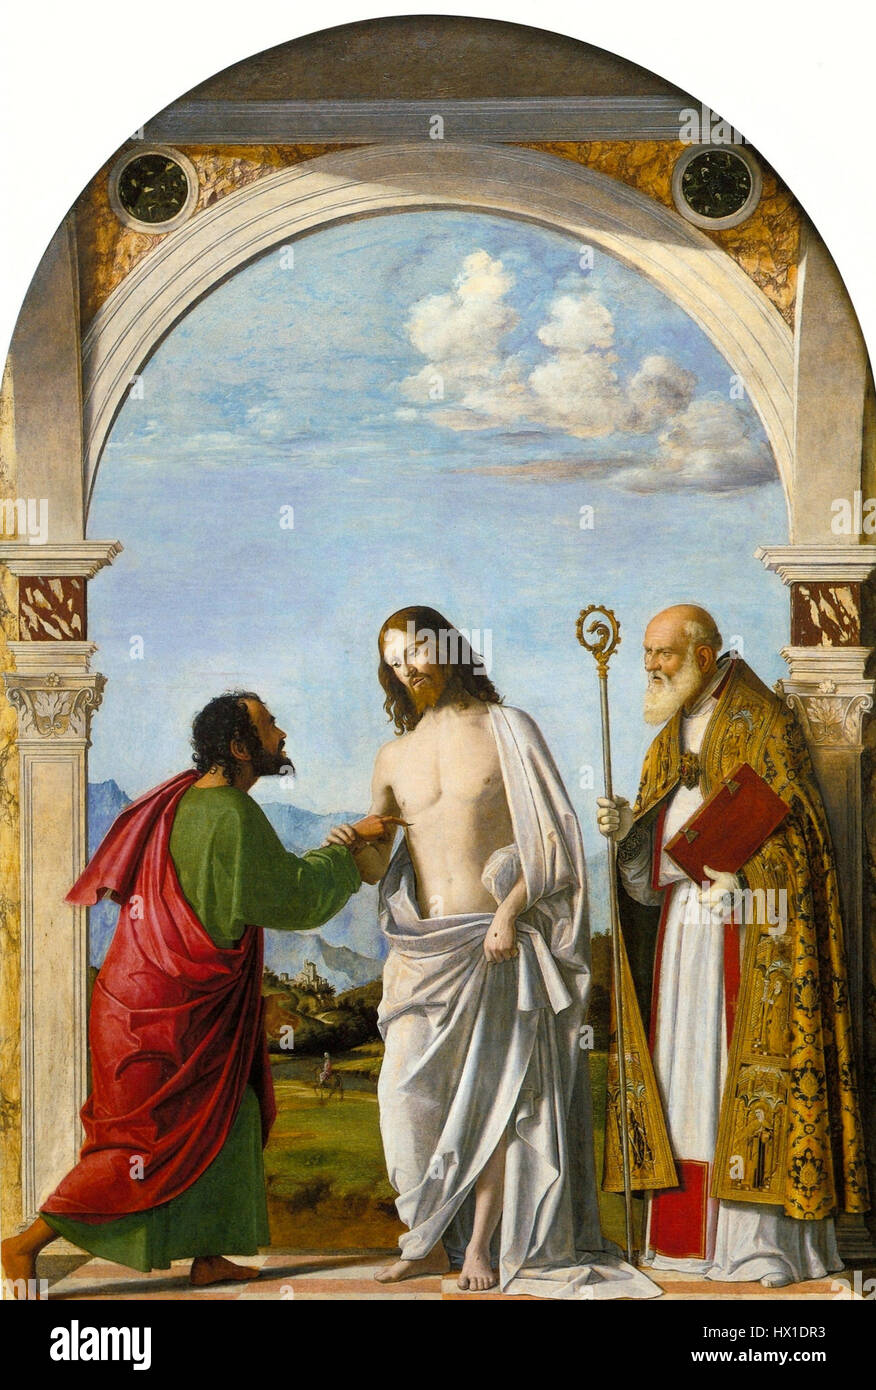 Cima da Conegliano, Incredulity of Thomas with Bishop Magno. ca. 1505, 215x151cm, Galleria dell'Accademia, Venice Stock Photo